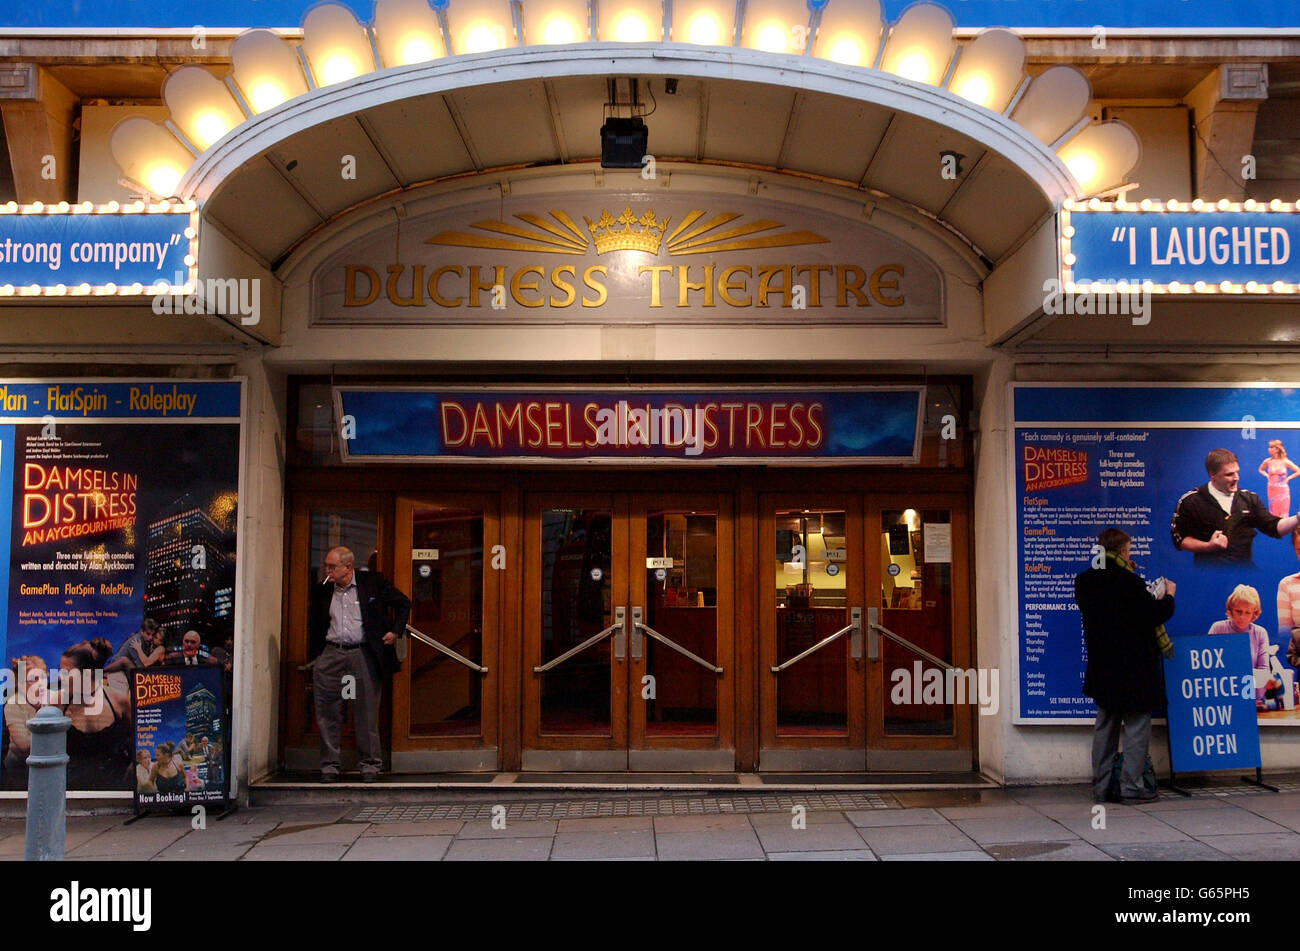 Das Duchess Theatre in der Catherine Street, London, zeigt Damsels in Distress und eine Alan Ayckbourn-Trilogie von Theaterstücken. Stockfoto